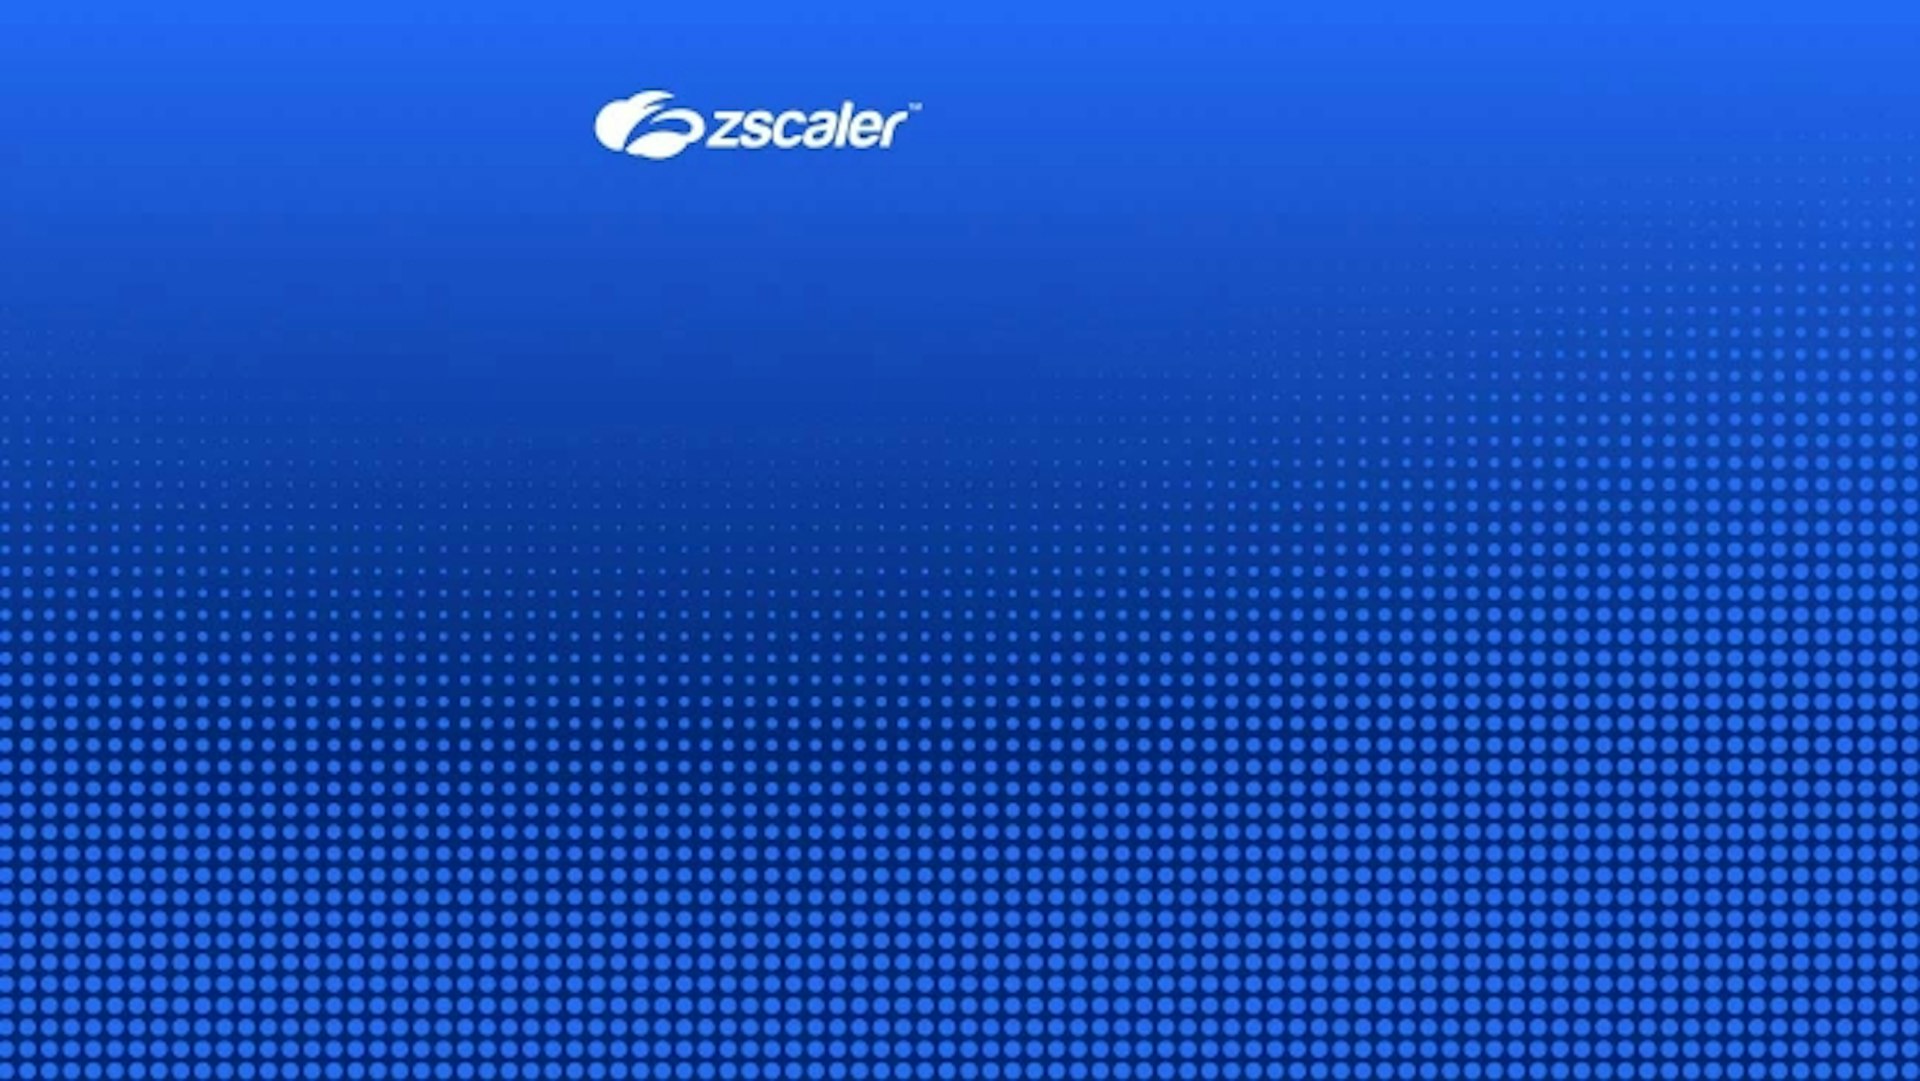 A Zscaler faz parceria com a Imprivata para oferecer zero trust para organizações de saúde